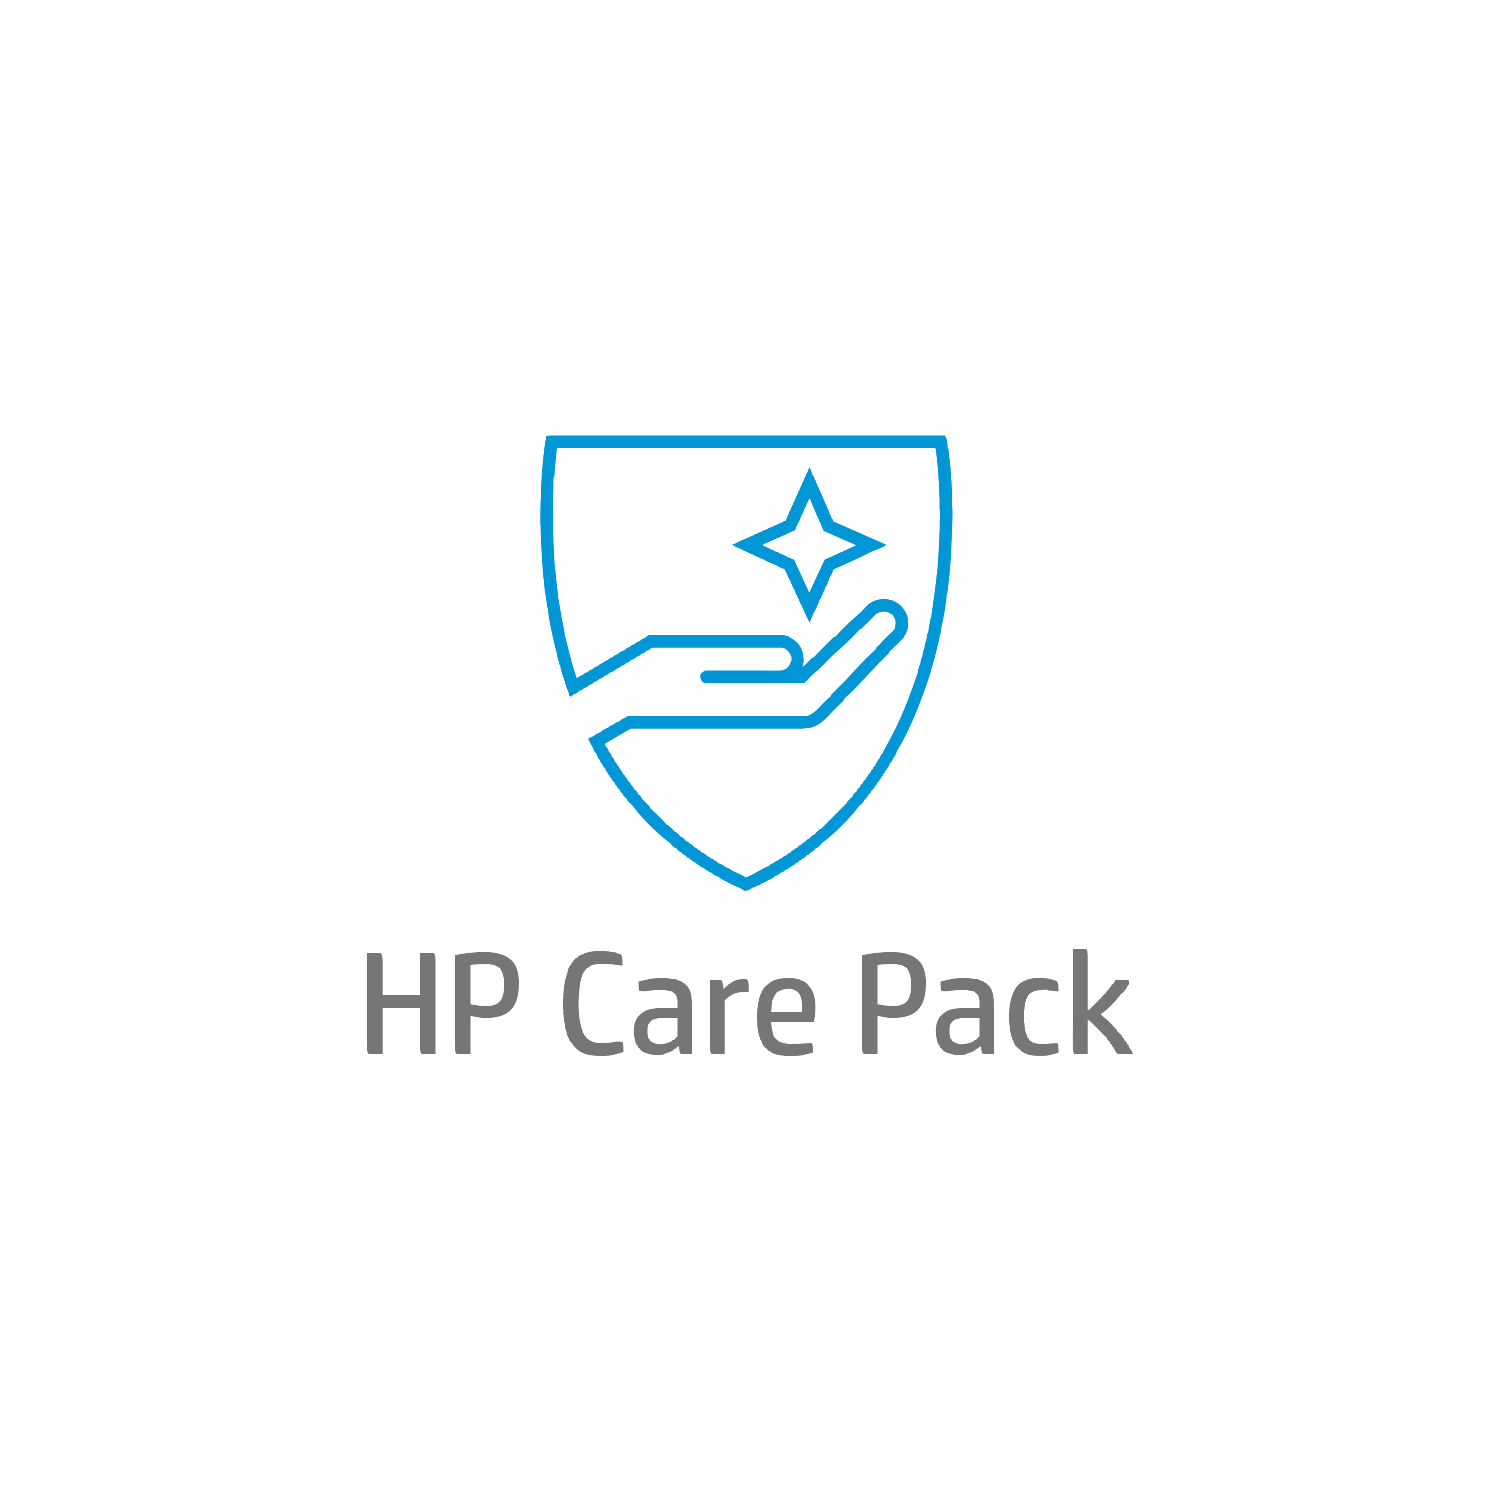 Bild von HP Care 5 Jahre Solution-Support für Mobile Workstations - Externe Reparatur - Außerhalb des Kundenstandorts - Unter Garantie - Standardarbeitstage - 9 Stunden - 5 Jahre - Reparatur innerhalb von 3–7 Werktagen